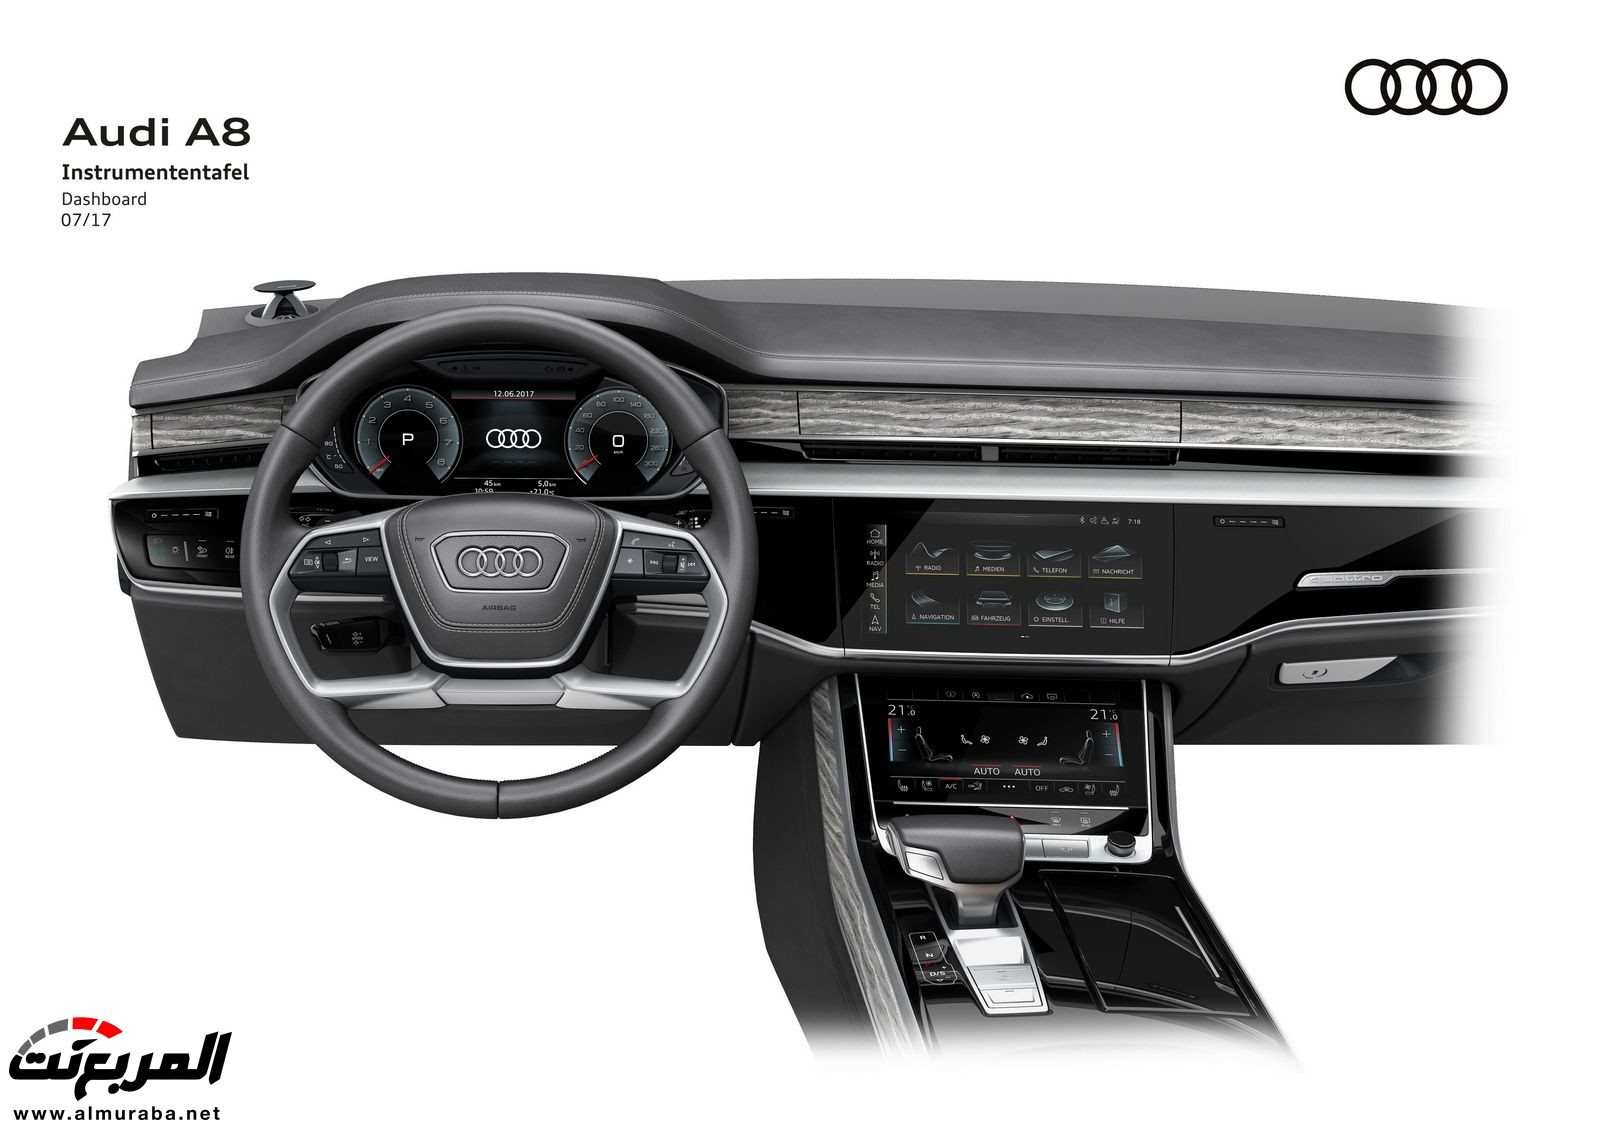 أودي A8 2018 الجديدة كلياً تكشف نفسها بتصميم وتقنيات متطورة "معلومات + 100 صورة" Audi A8 91